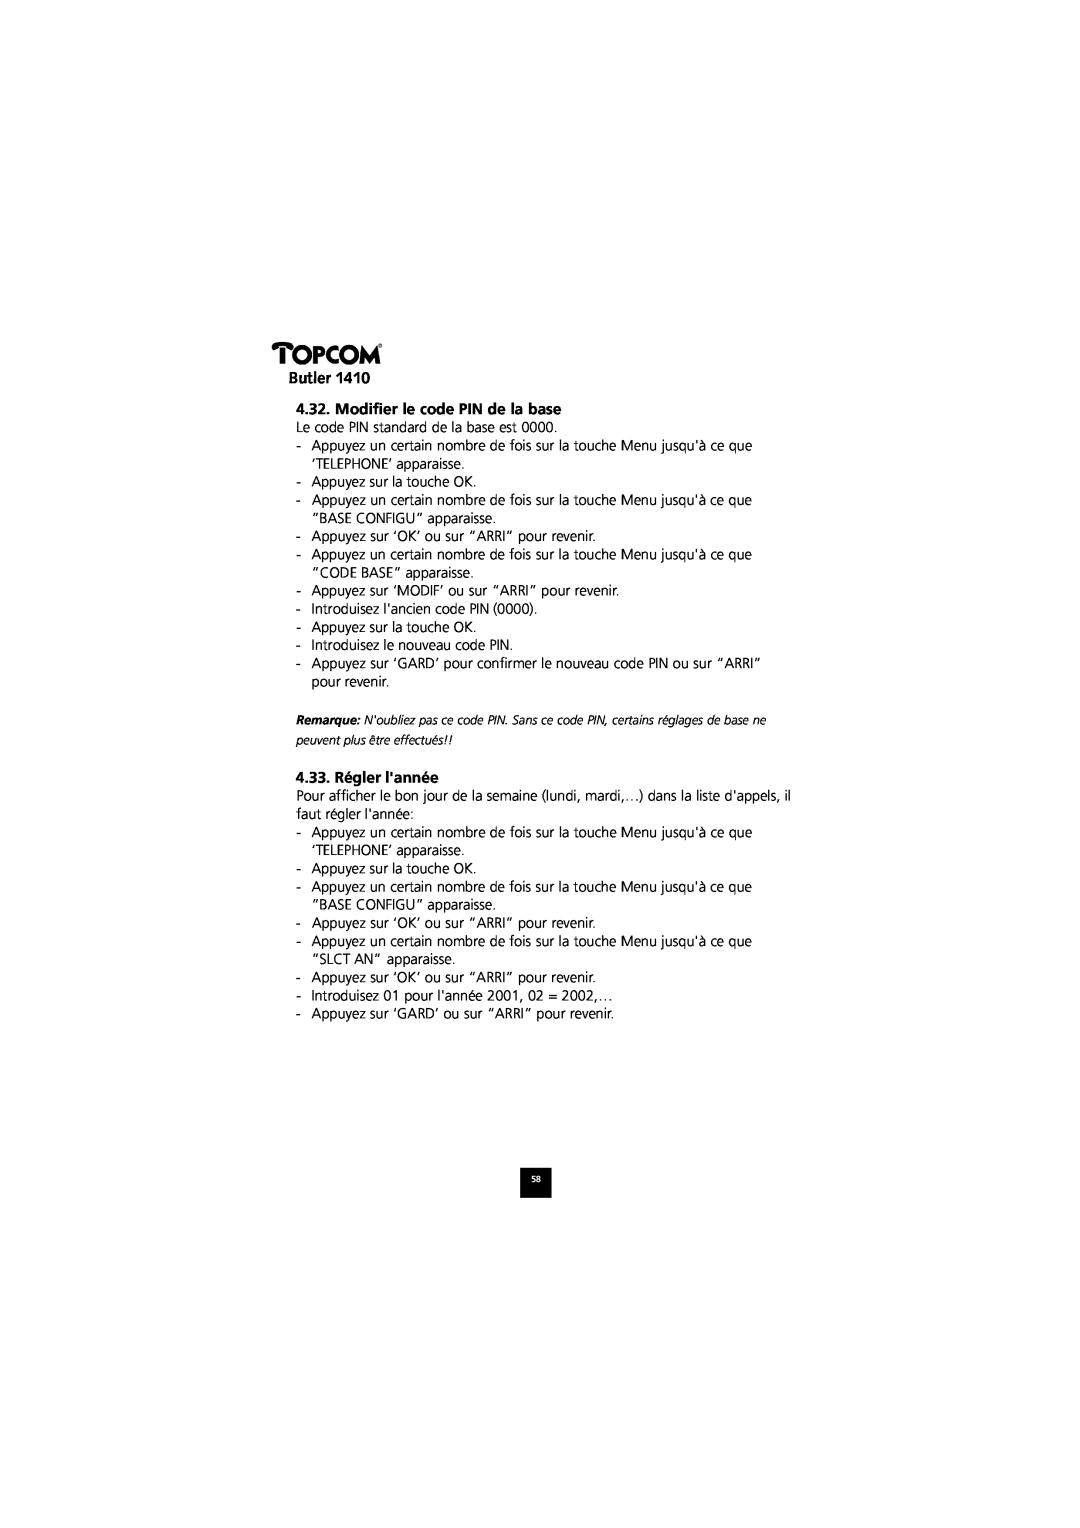 Topcom 1410 manual 4.33. Régler lannée, Butler, peuvent plus être effectués 